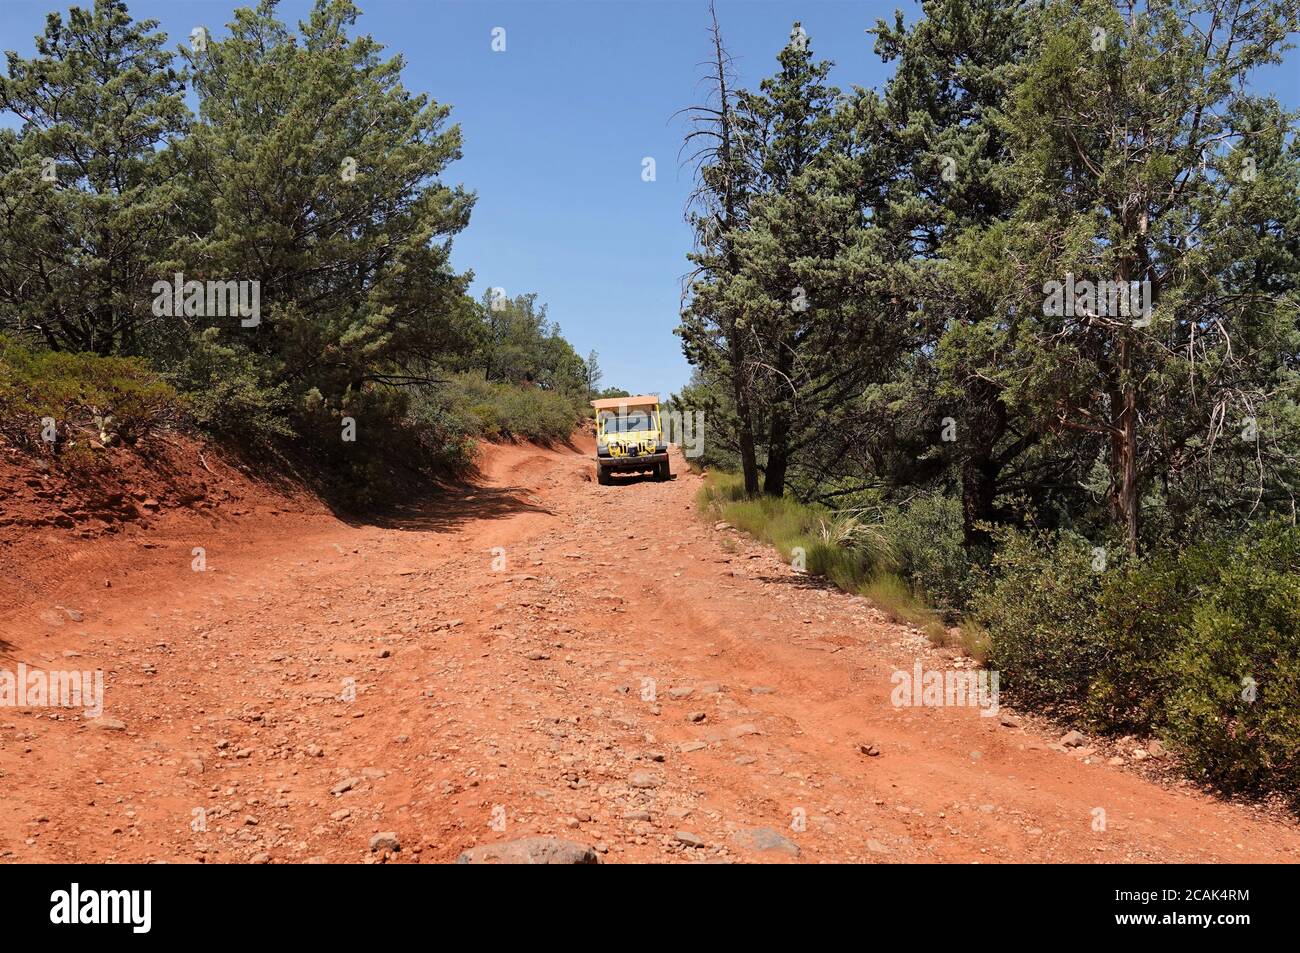 Geländewagen spielen auf den Hinterstraßen-Trails in Sedona Arizona Stockfoto